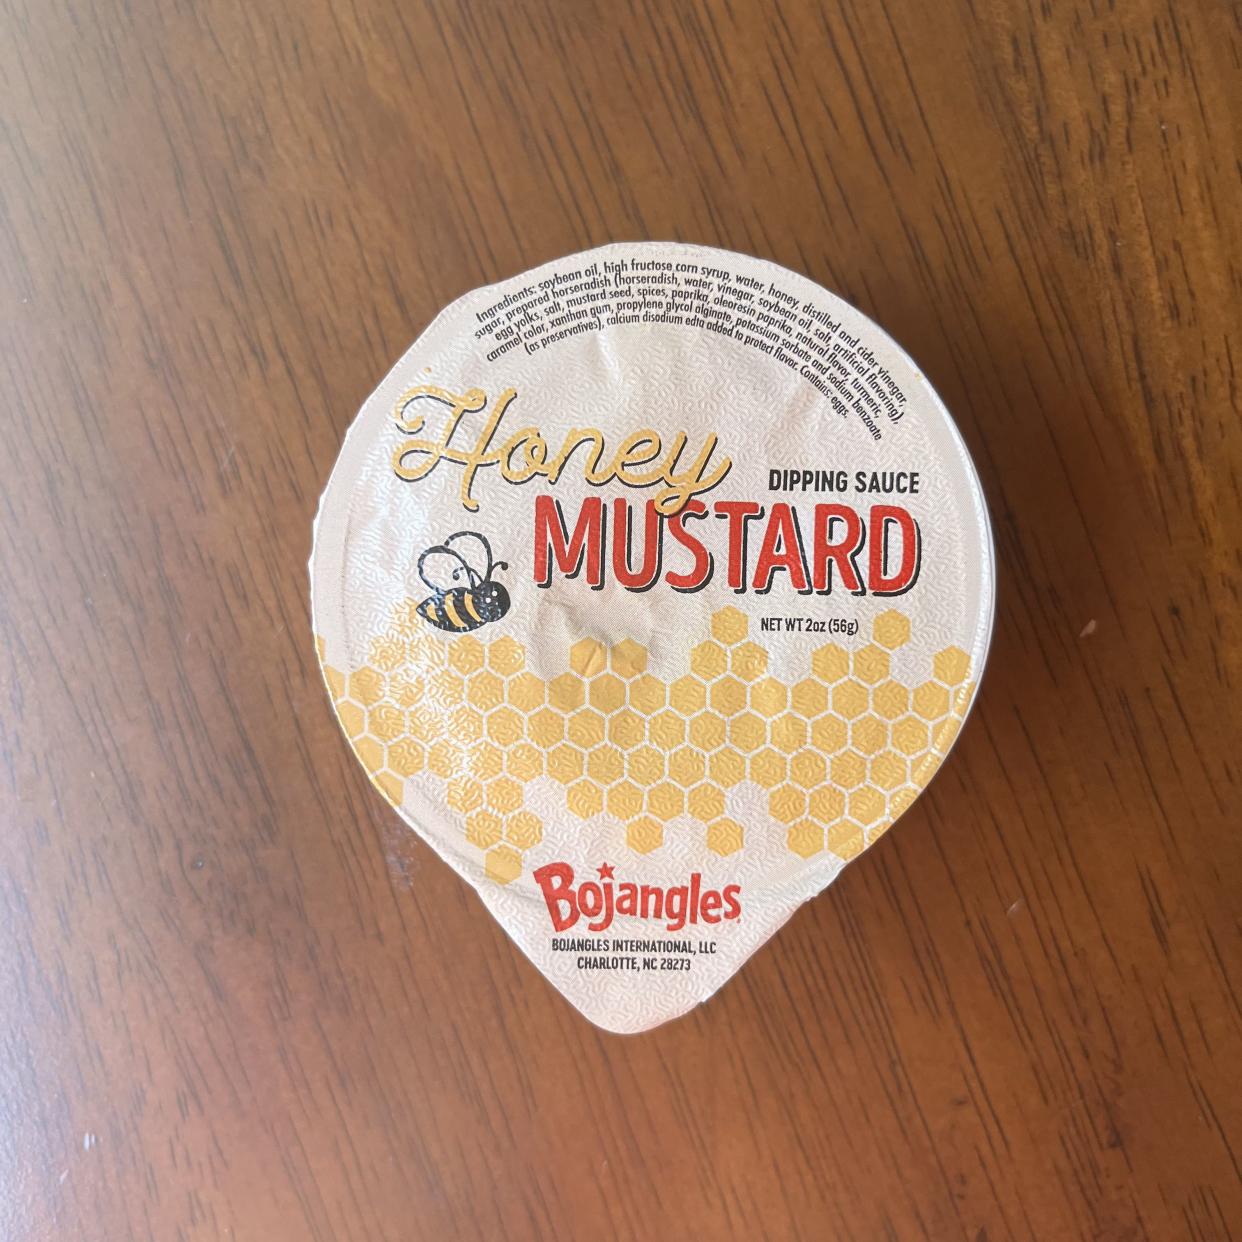 Bojangles Honey Mustard sauce